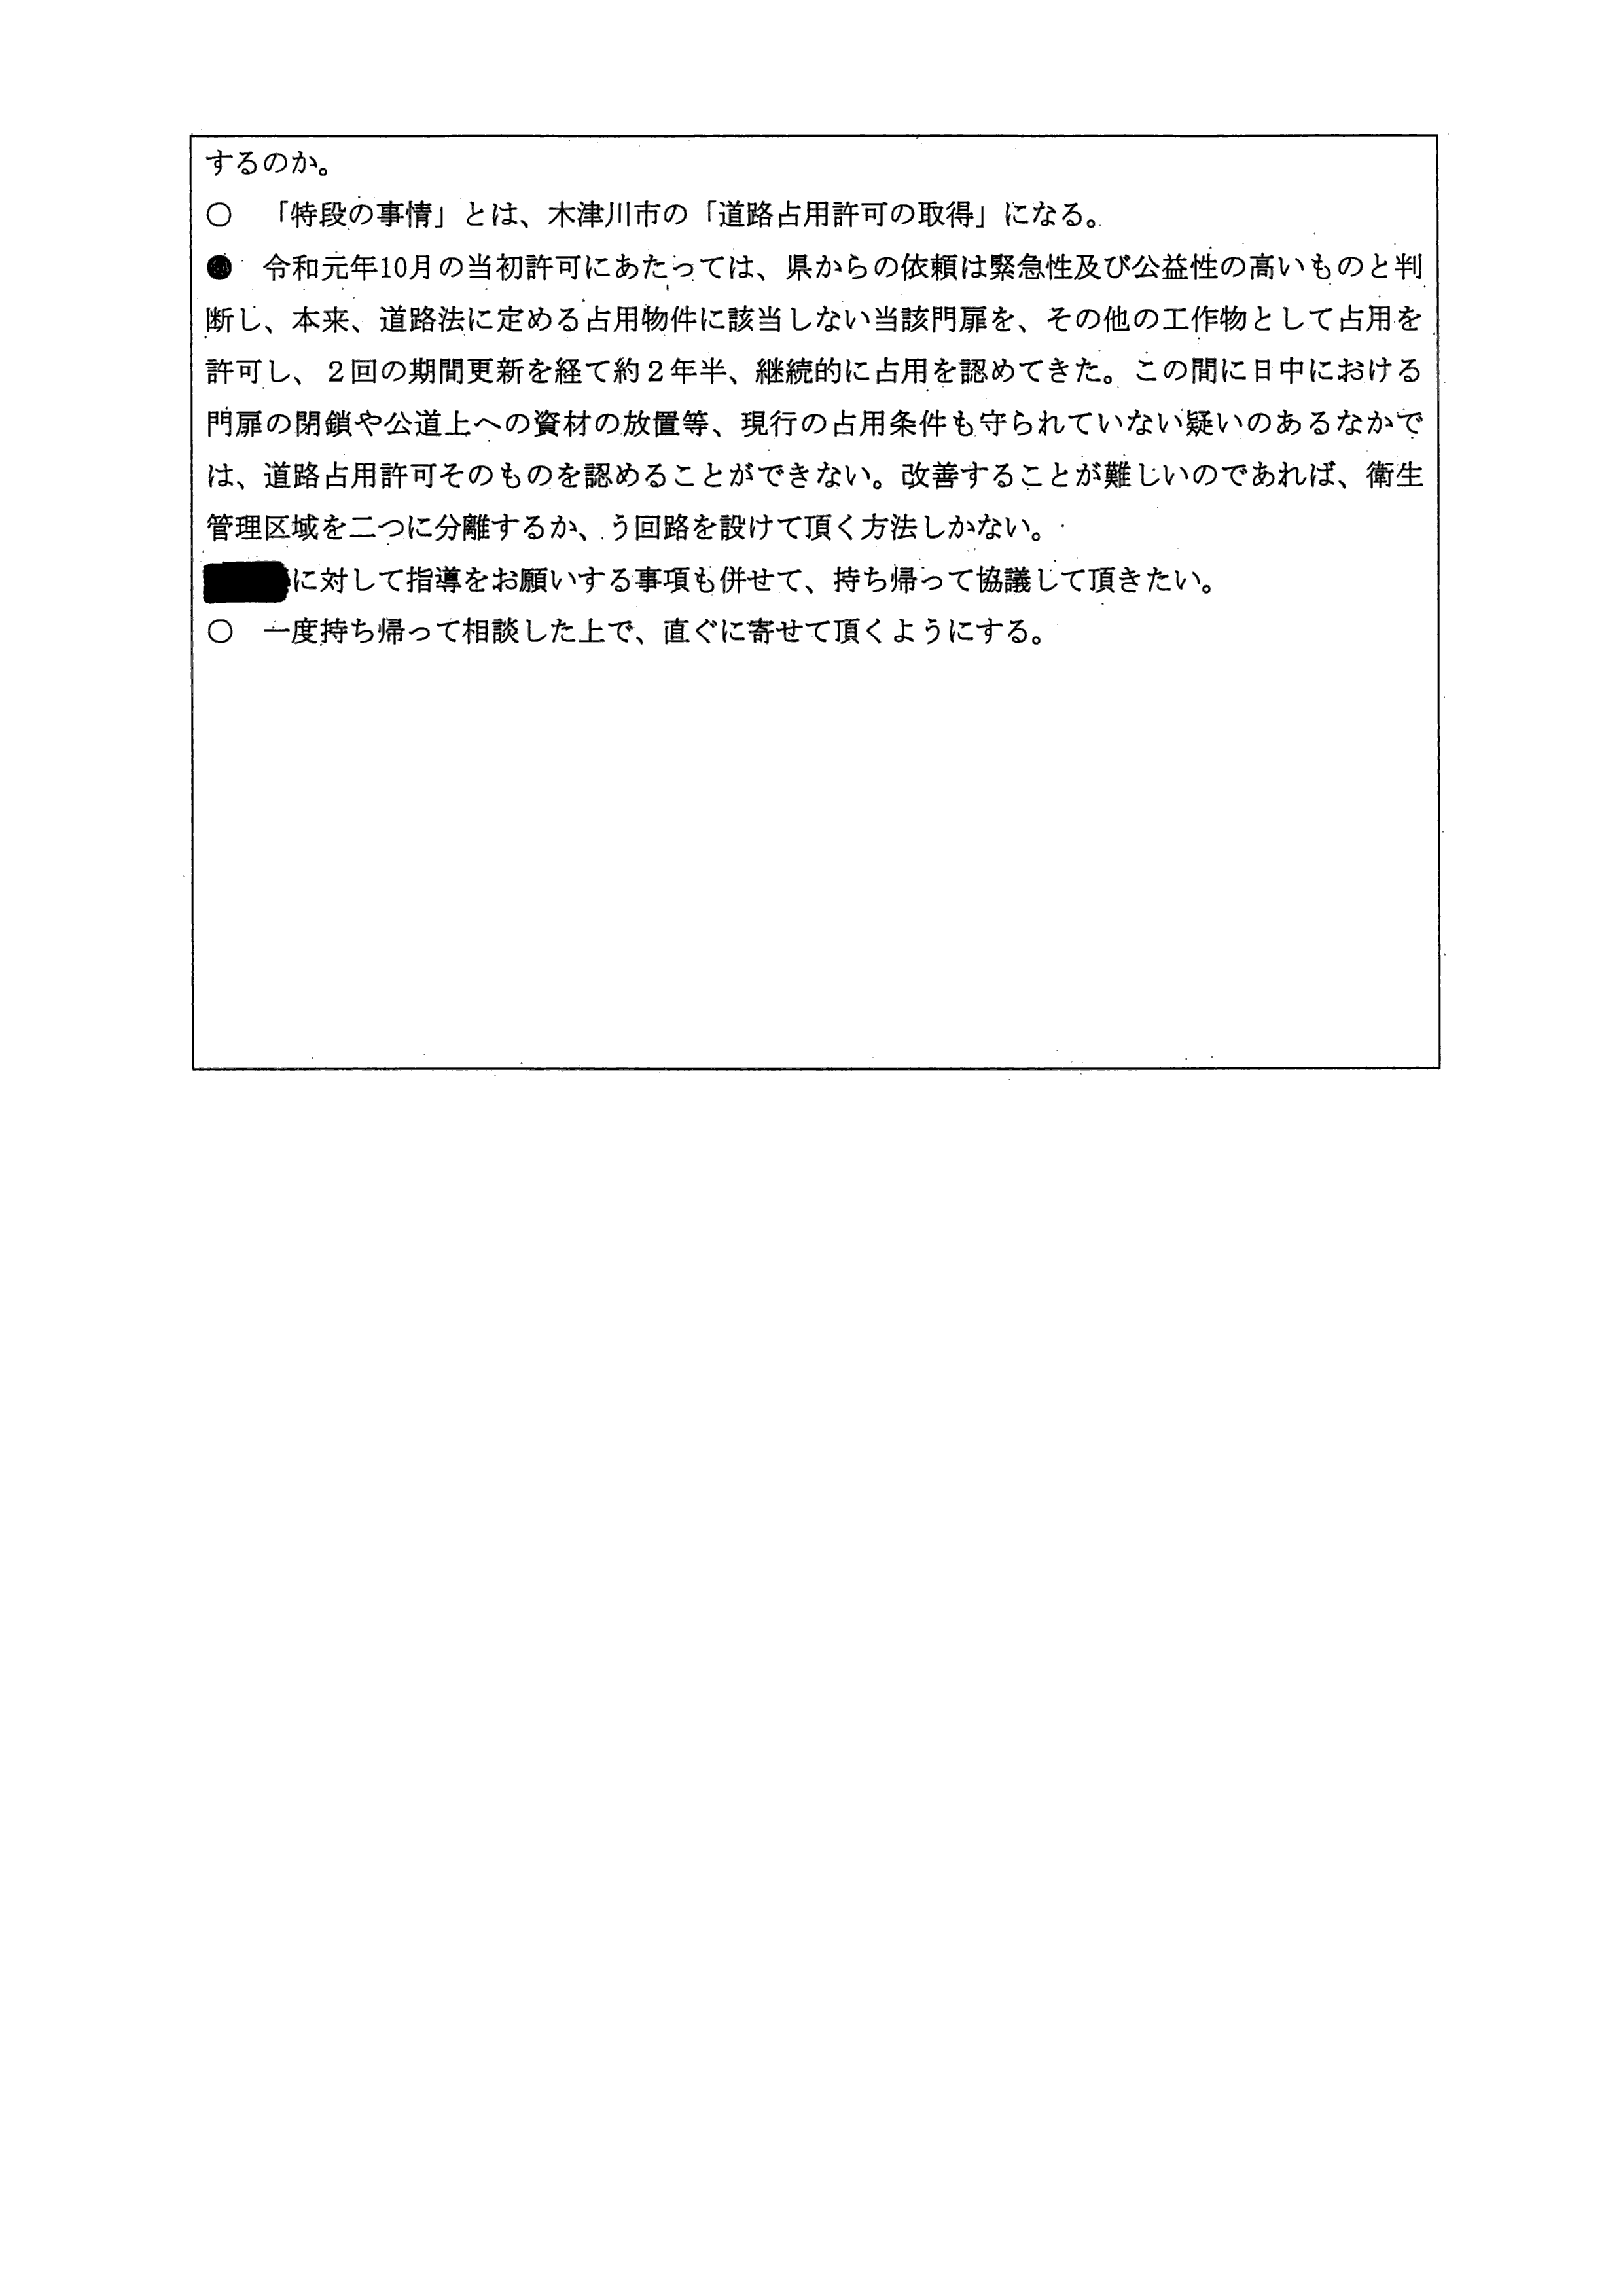 令和4年2月21日-村田商店の占用許可条件変更について（奈良県との協議）-03